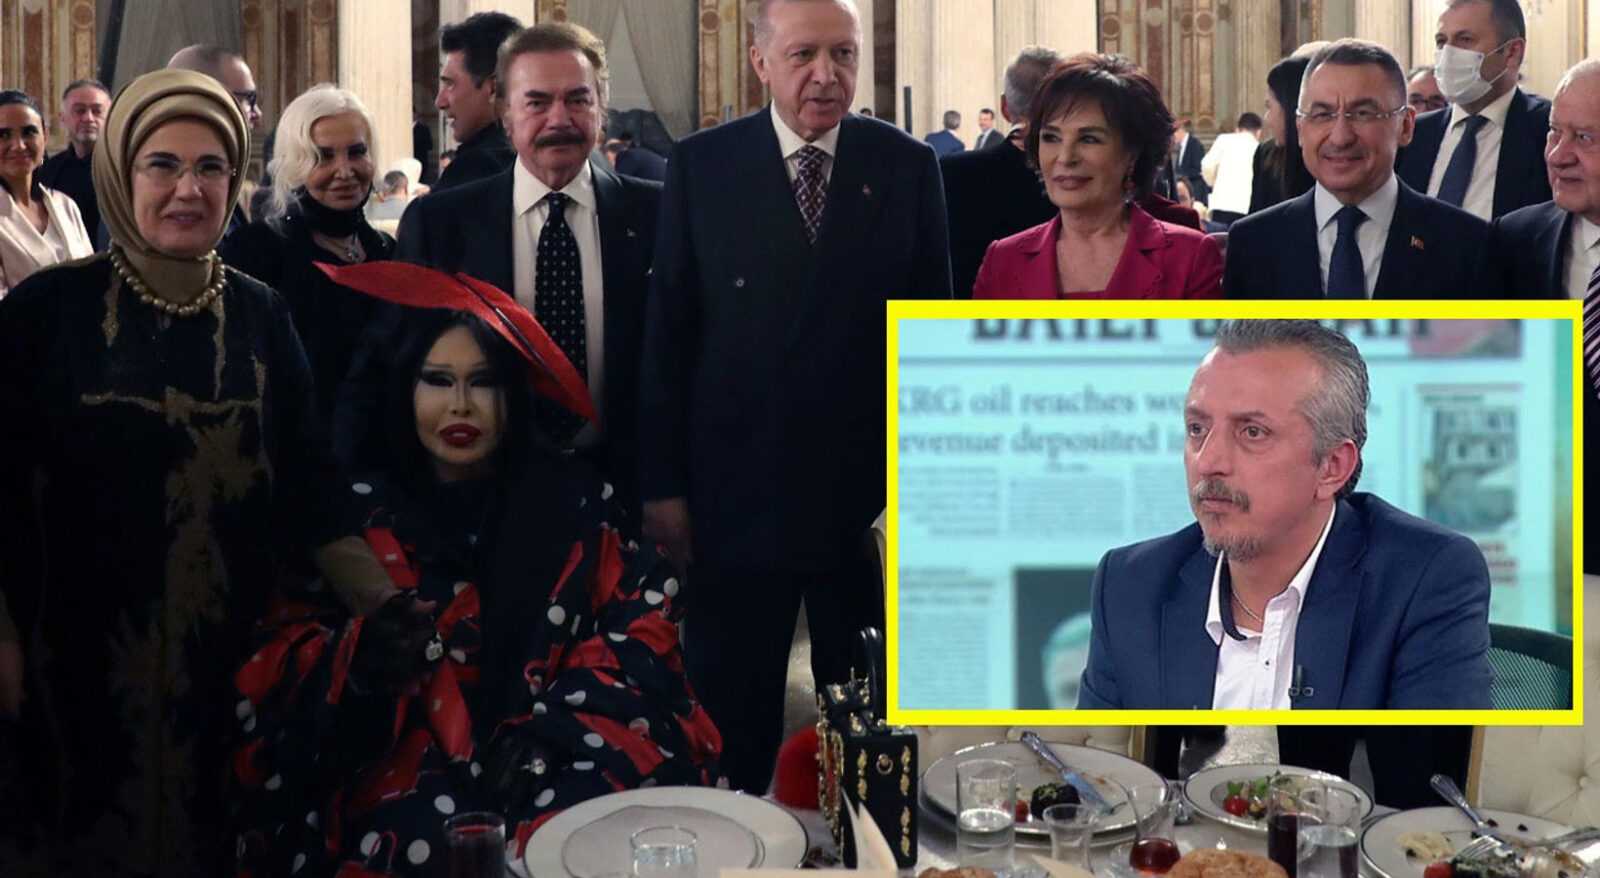 Gazeteci Murat Kelkitlioğlu: Cihangir’de Nişantaşı’nda ceylan gibi fink atıyorsun